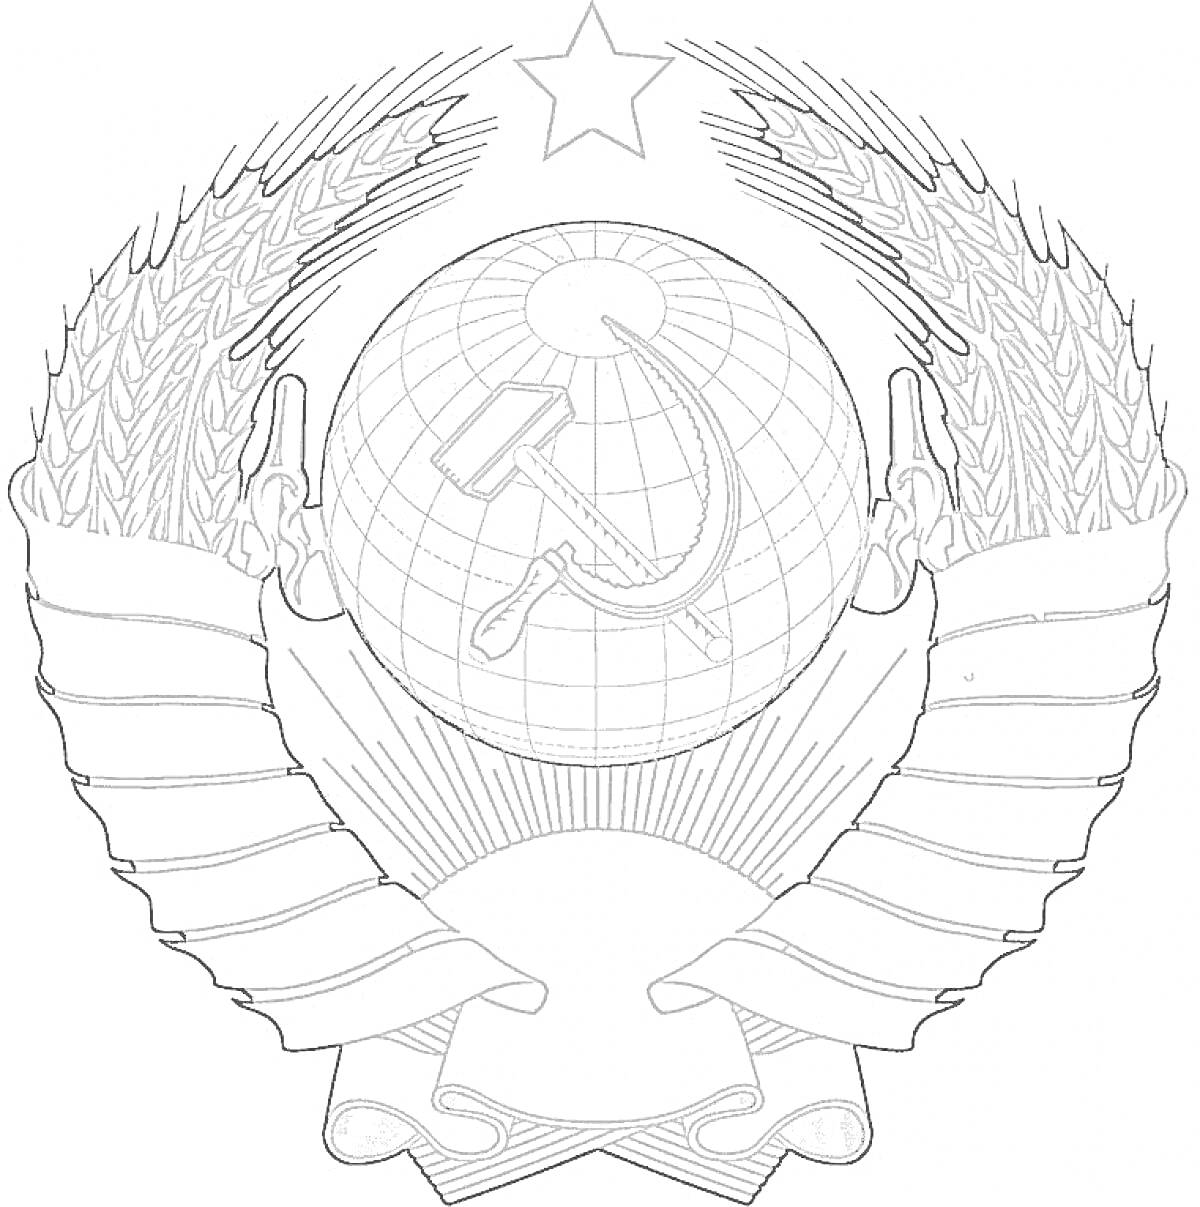 Герб СССР с серпом и молотом на фоне глобуса, звезда сверху, колосья по бокам